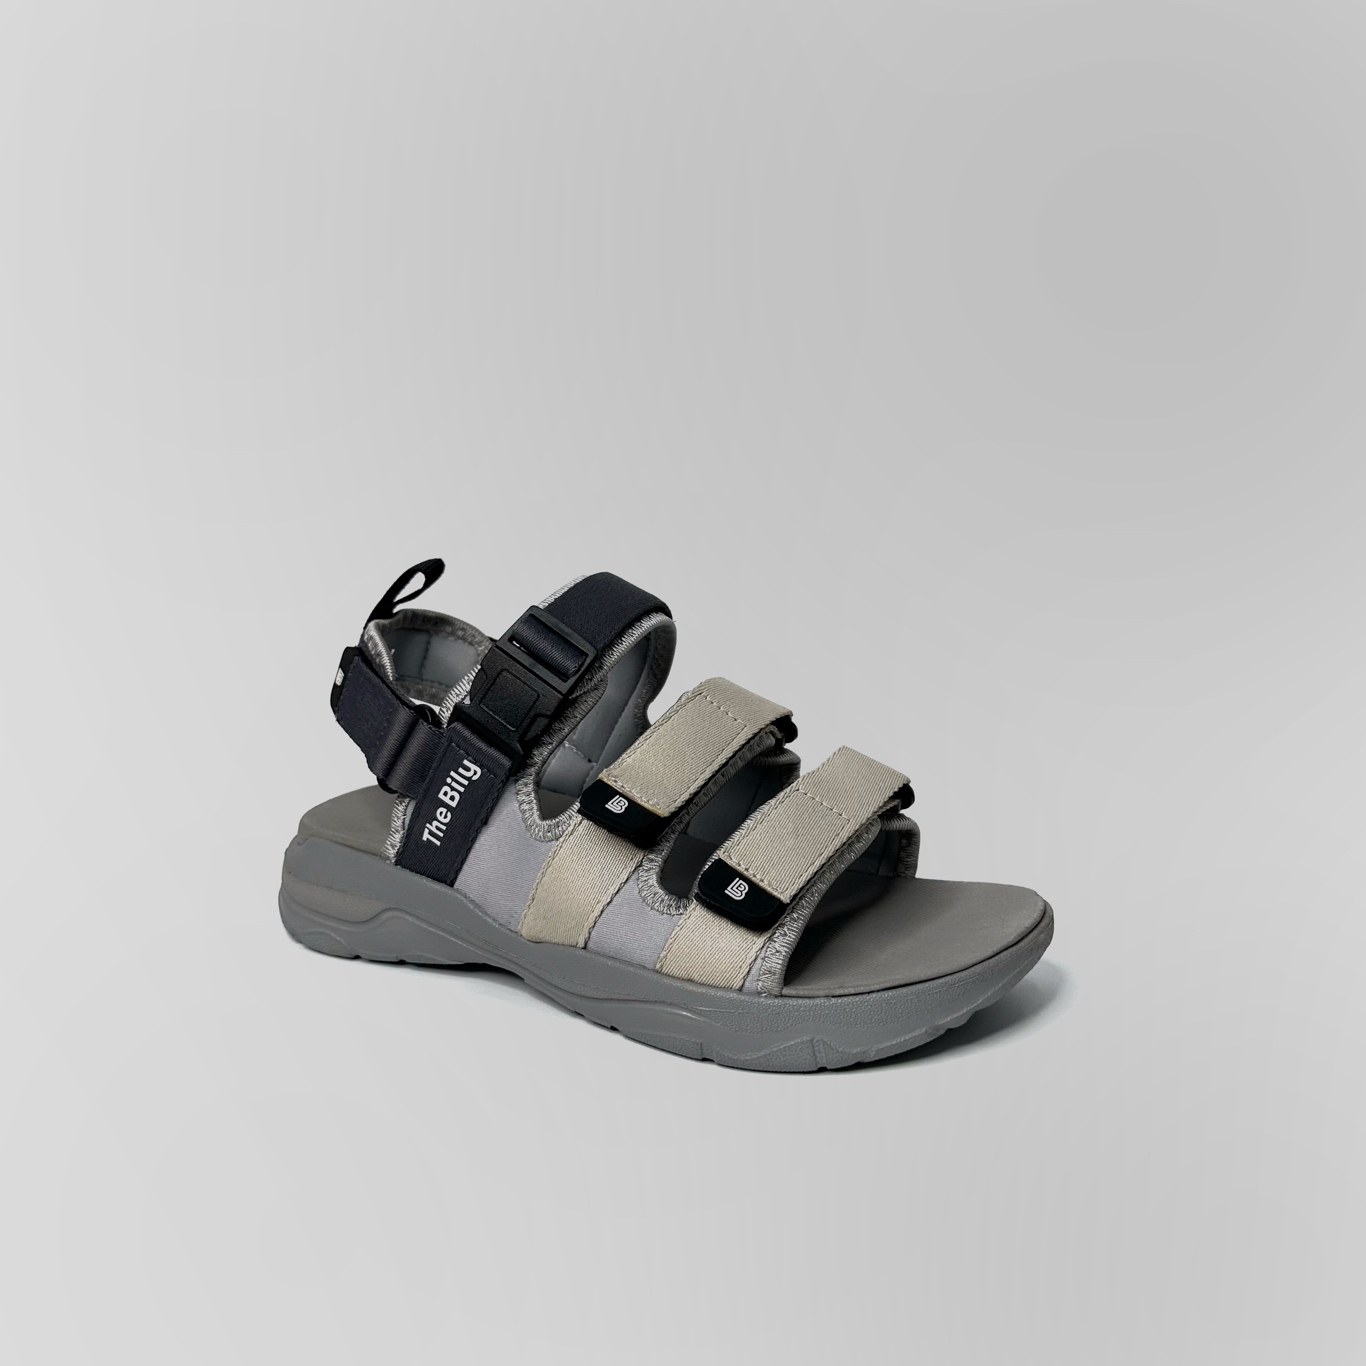 Giày Sandal Nam Nữ Unisex The BiLy Quai Ngang Dây Dù Đế IP Siêu Êm Nhẹ Đế Xám Màu Xám Kem-BLDX08